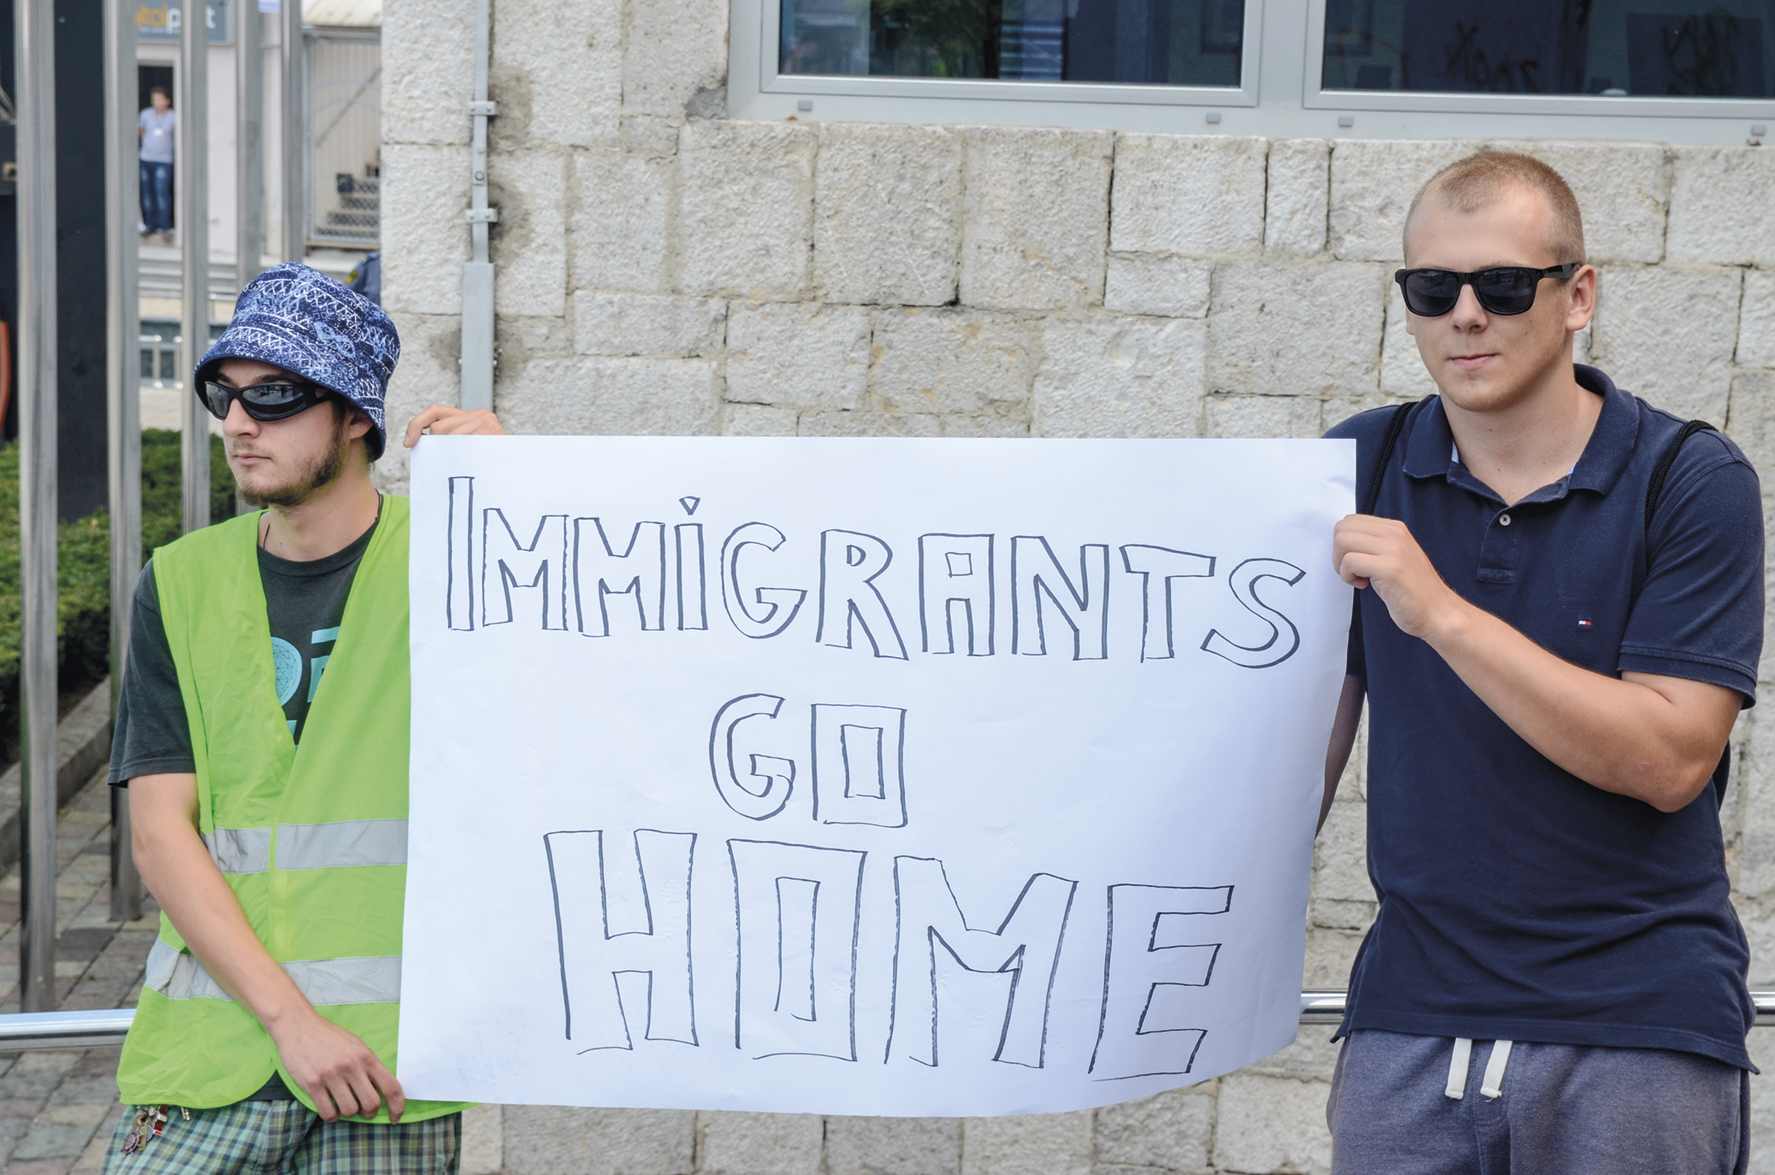 Fotografia. Dois homens brancos em pé, segurando um cartaz com a frase: IMMIGRANTS GO HOME.